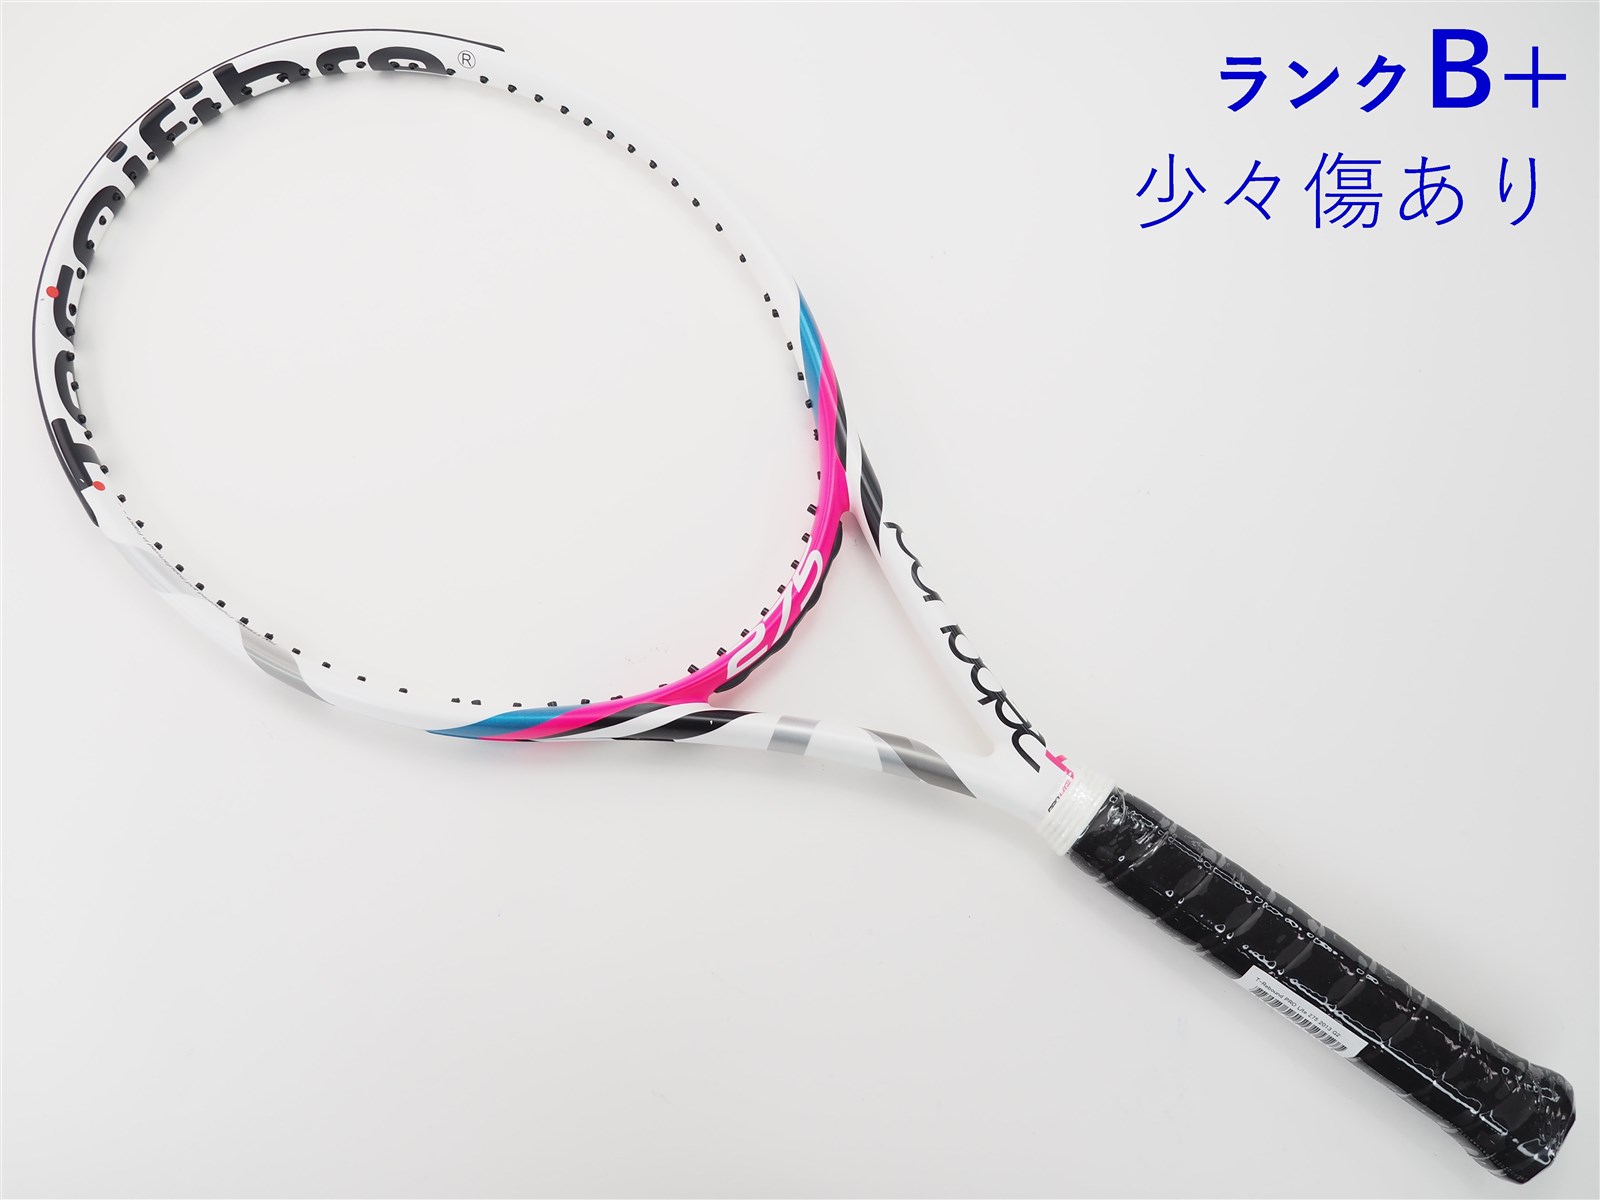 テクニファイバー 硬式テニスラケット Tリバウンドプロ 275g 